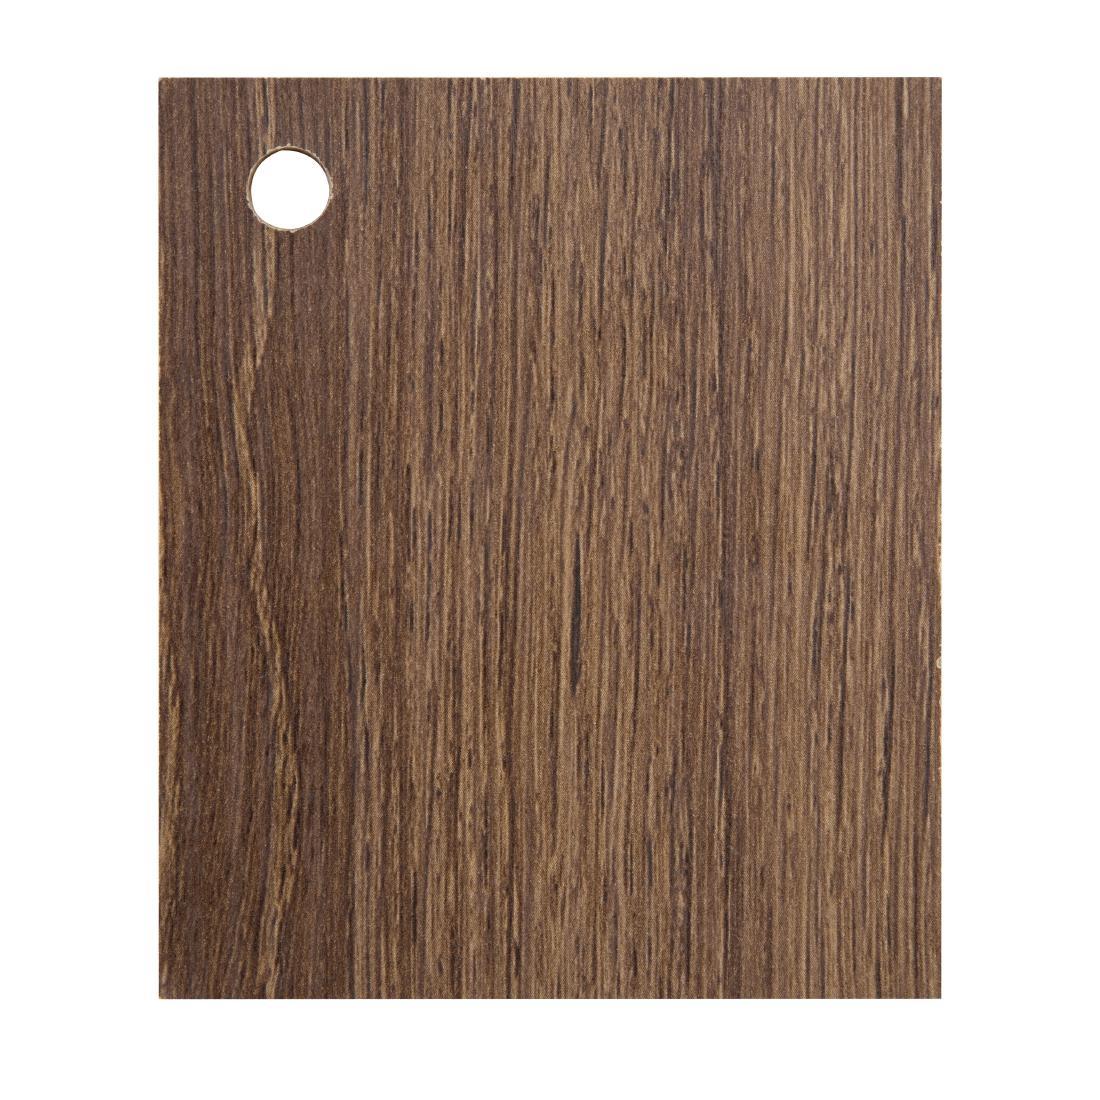 Bolero Rustic Oak Wooden Swatch - AJ832  - 1